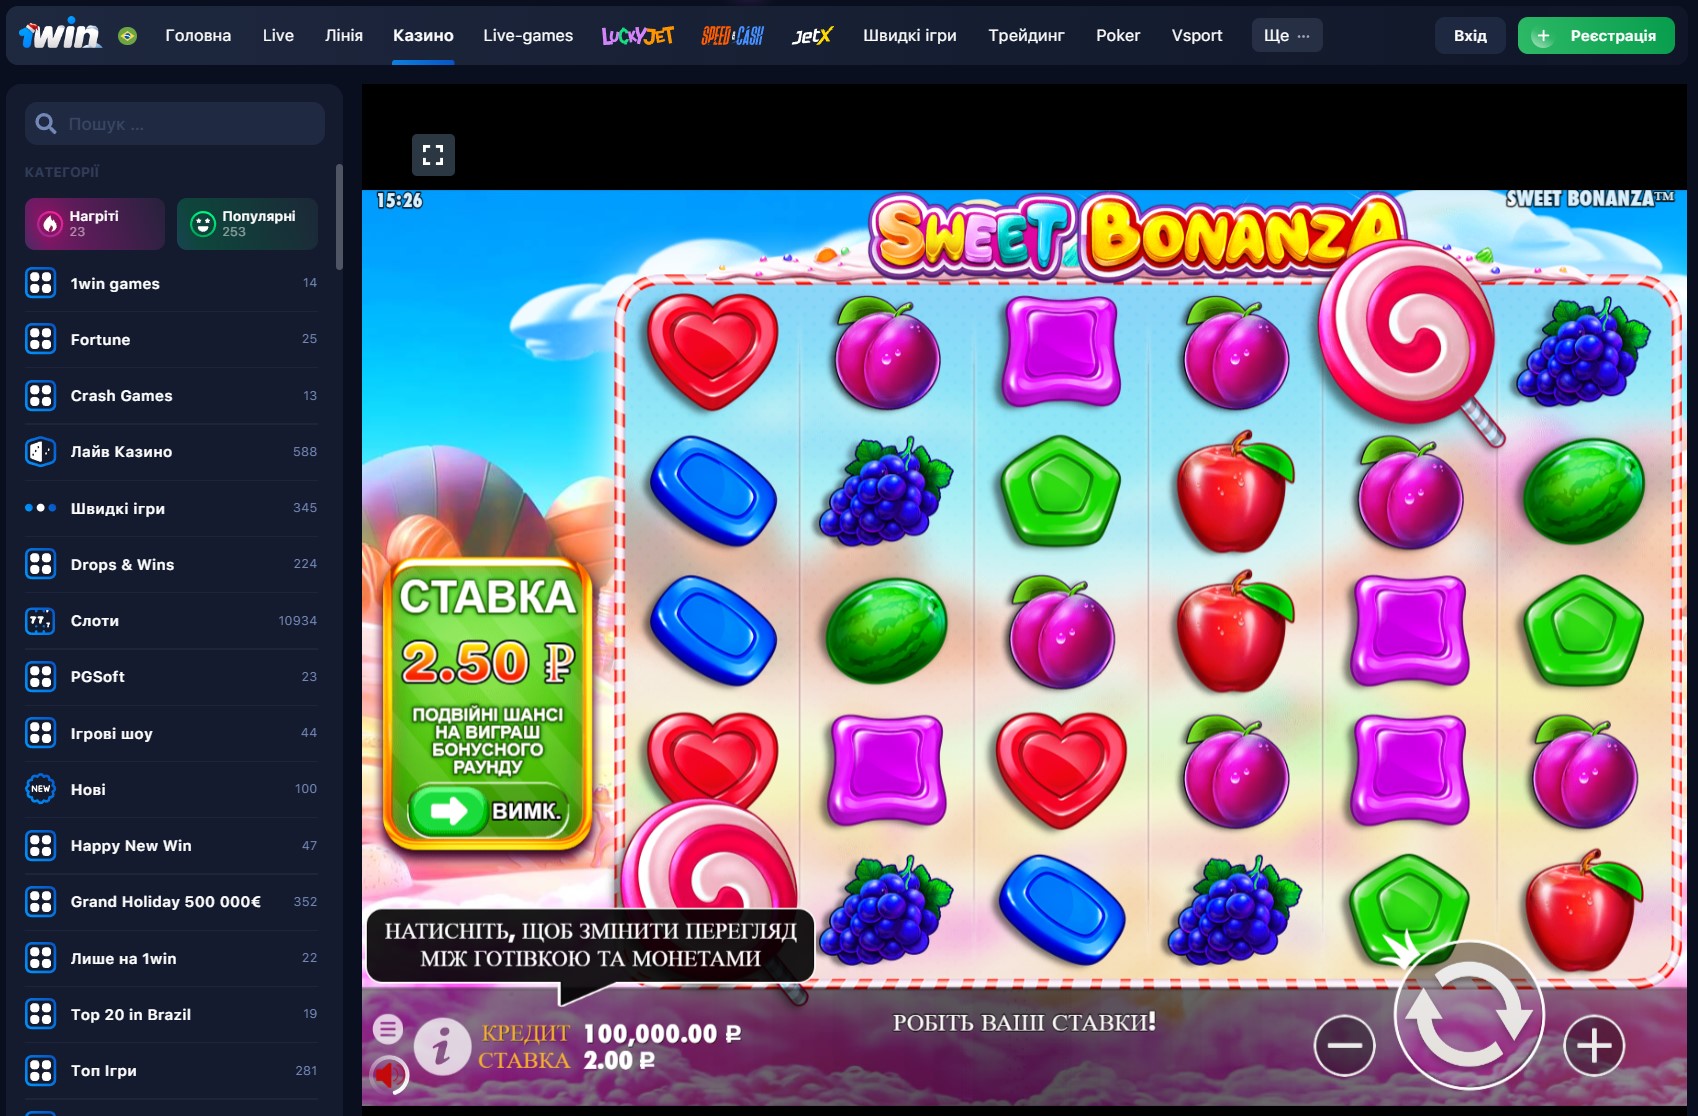 Увлекательные игры: Sweet Bonanza Slot на 1Win для поклонников азарта